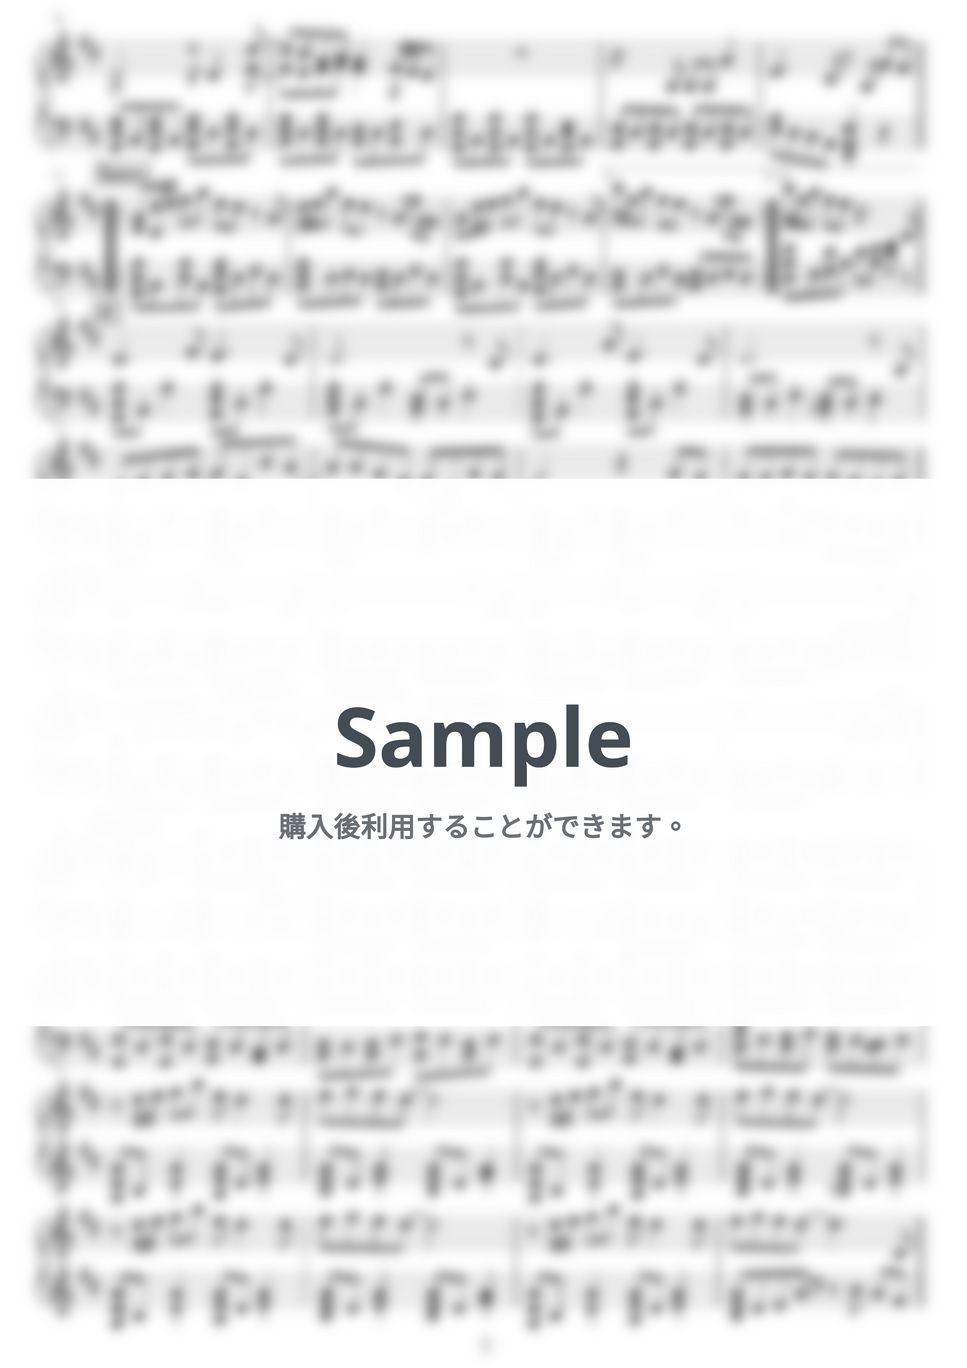 ヨルシカ - パレード by NOTES music